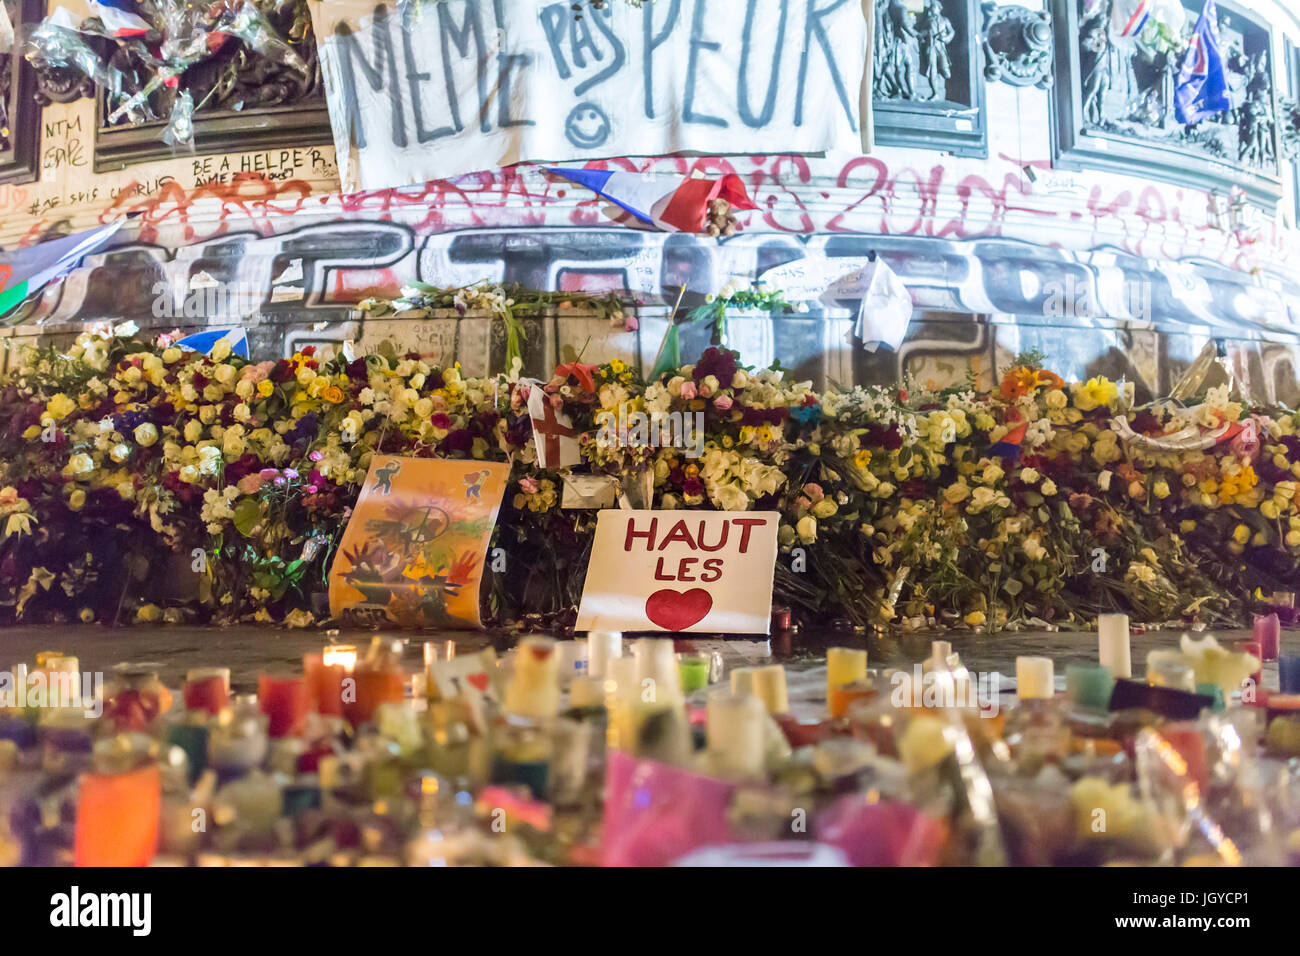 Même Pas Peur, et Haut les coeurs. Keine Angst und Kinn. Spontane Hommage an die Opfer der Terroranschläge in Paris, 13. November 2015. Stockfoto